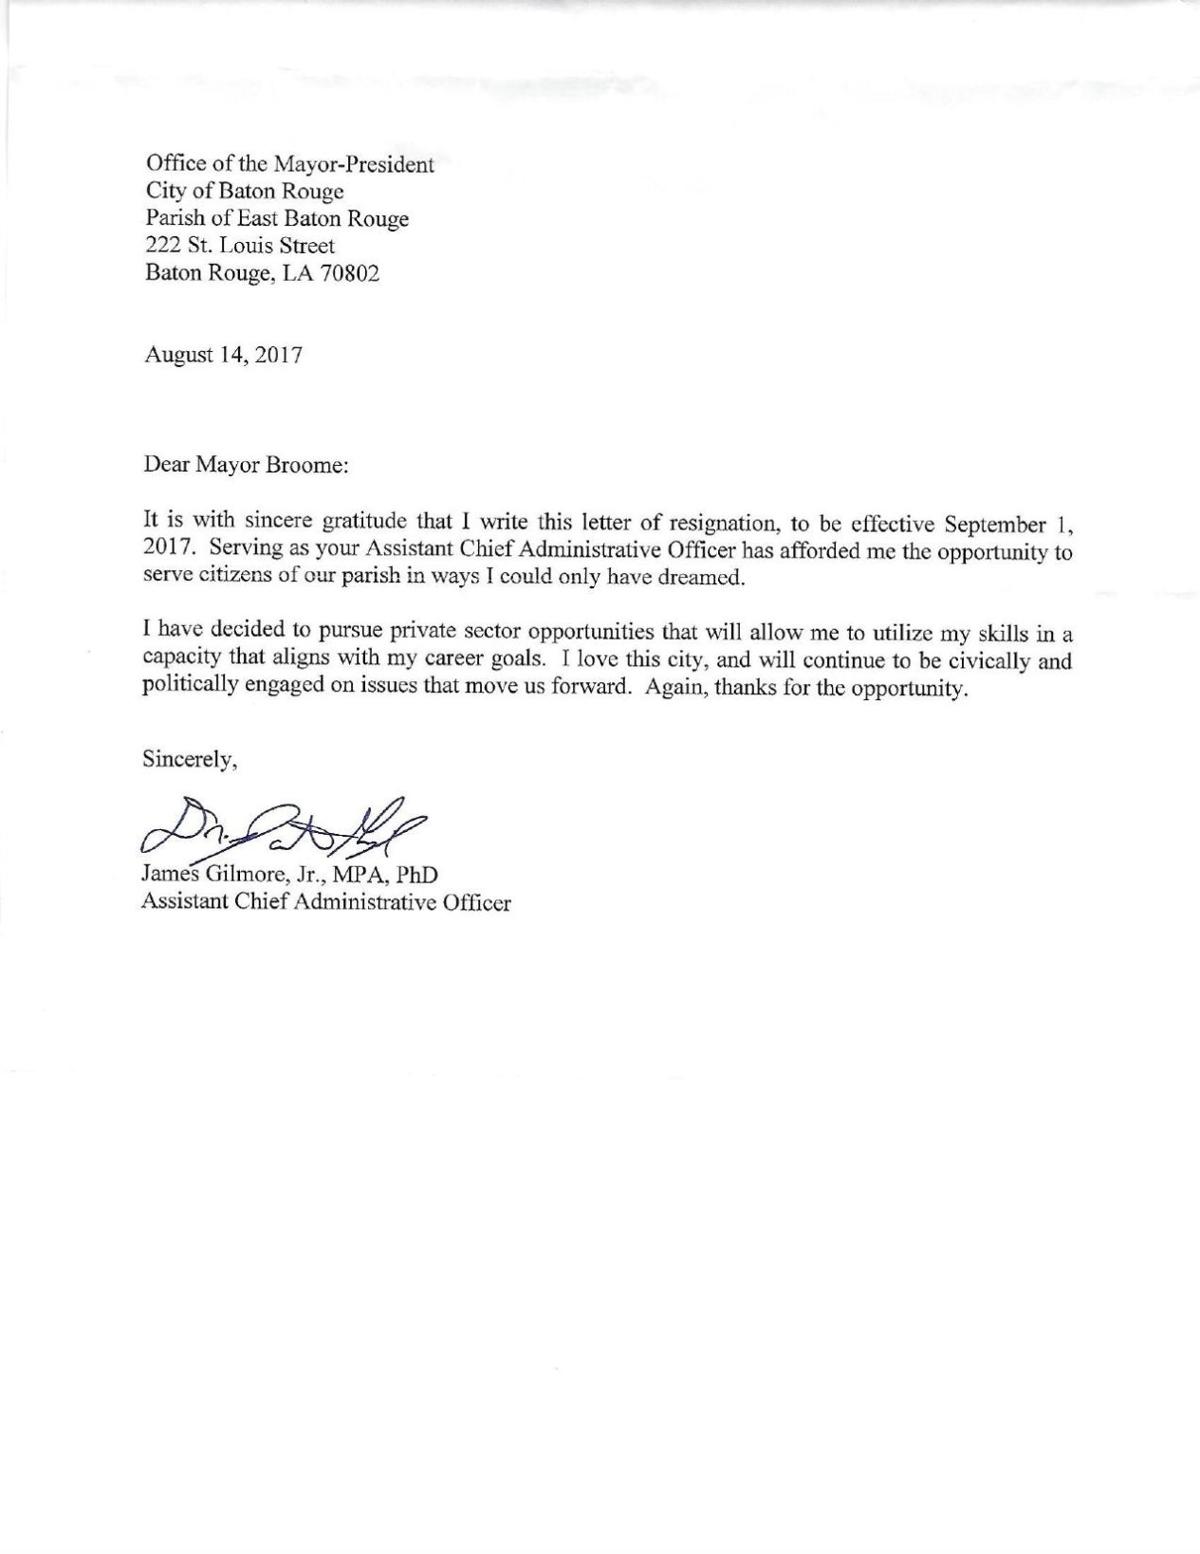 James Gilmore resignation letter